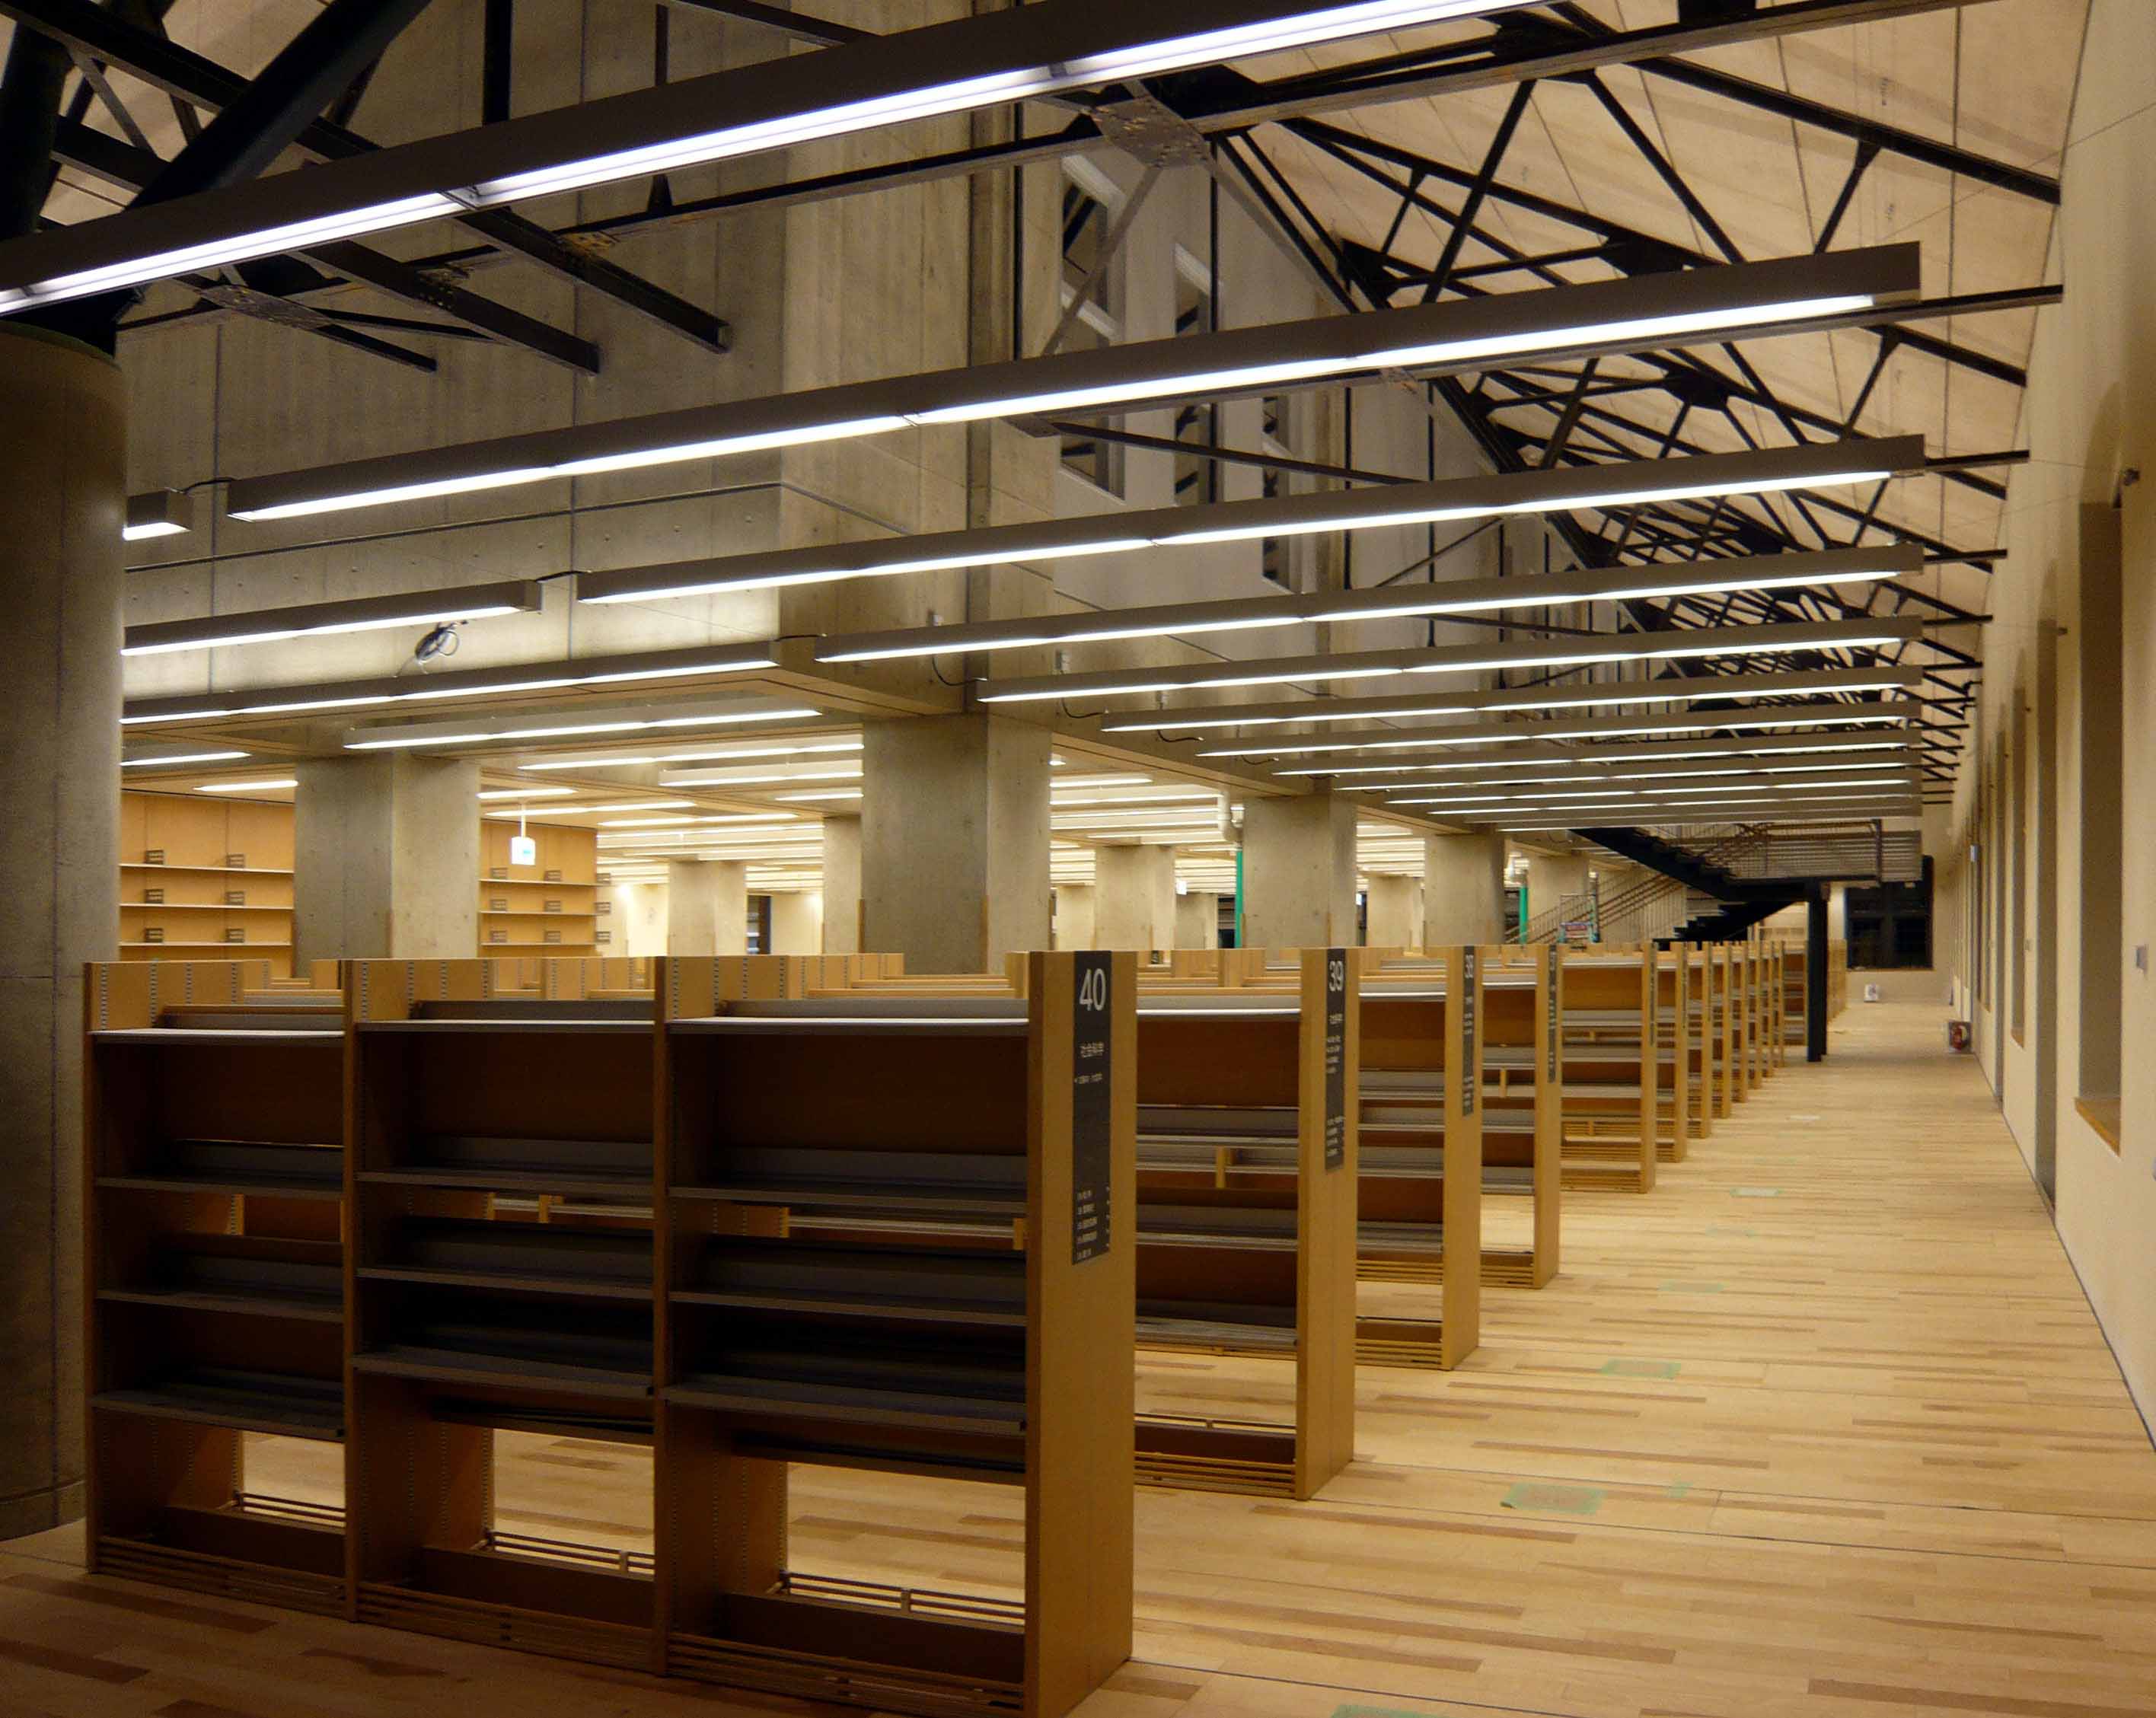 北区新中央図書館オープン 照明デザイン いまどきの陰影礼讃